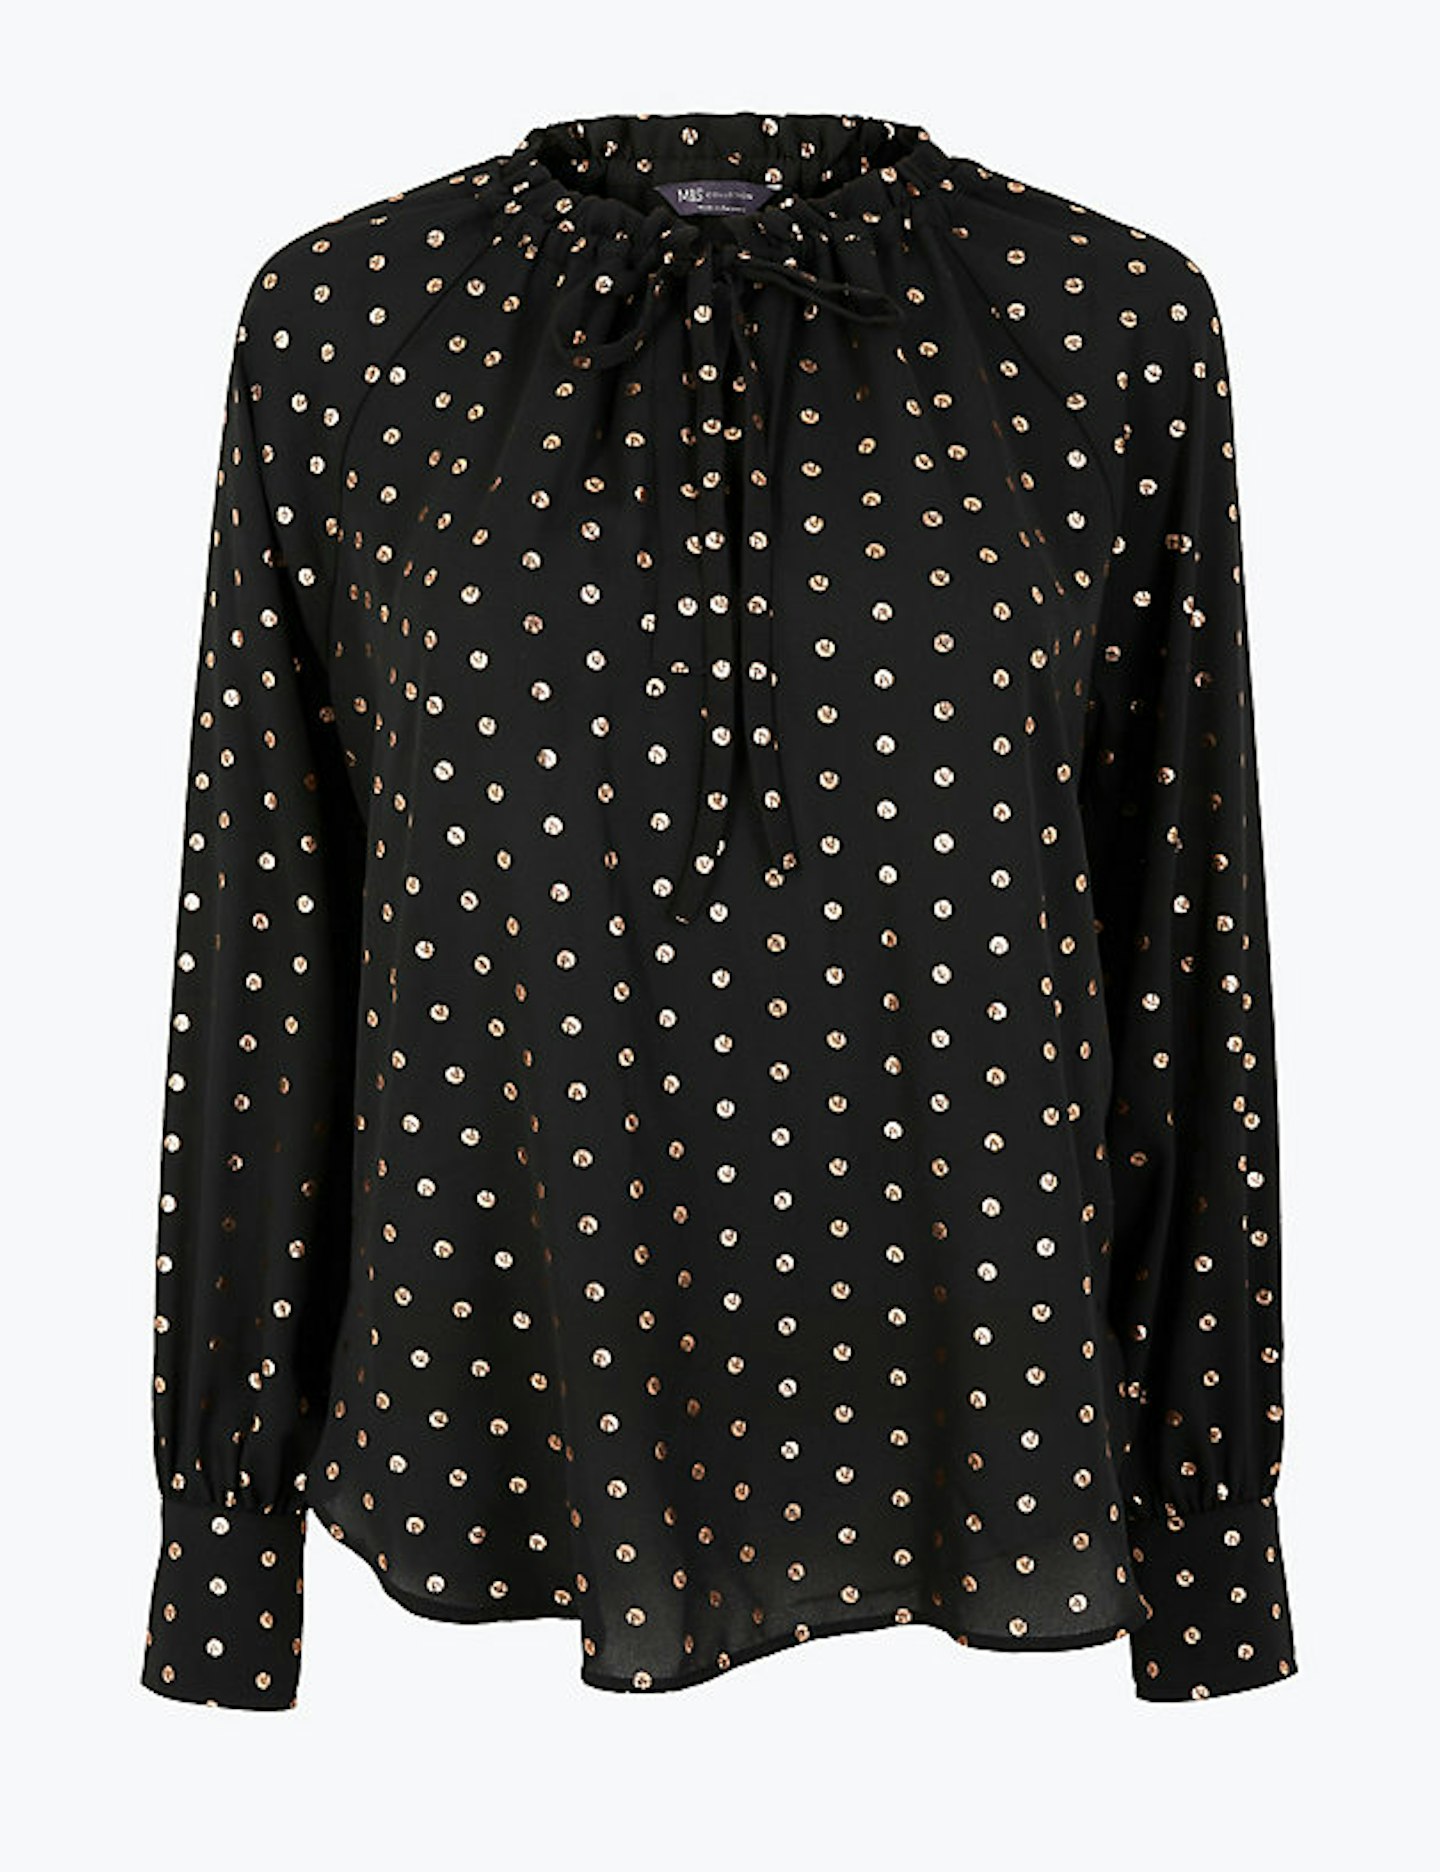 M&S, polka-dot blouse, £29.50